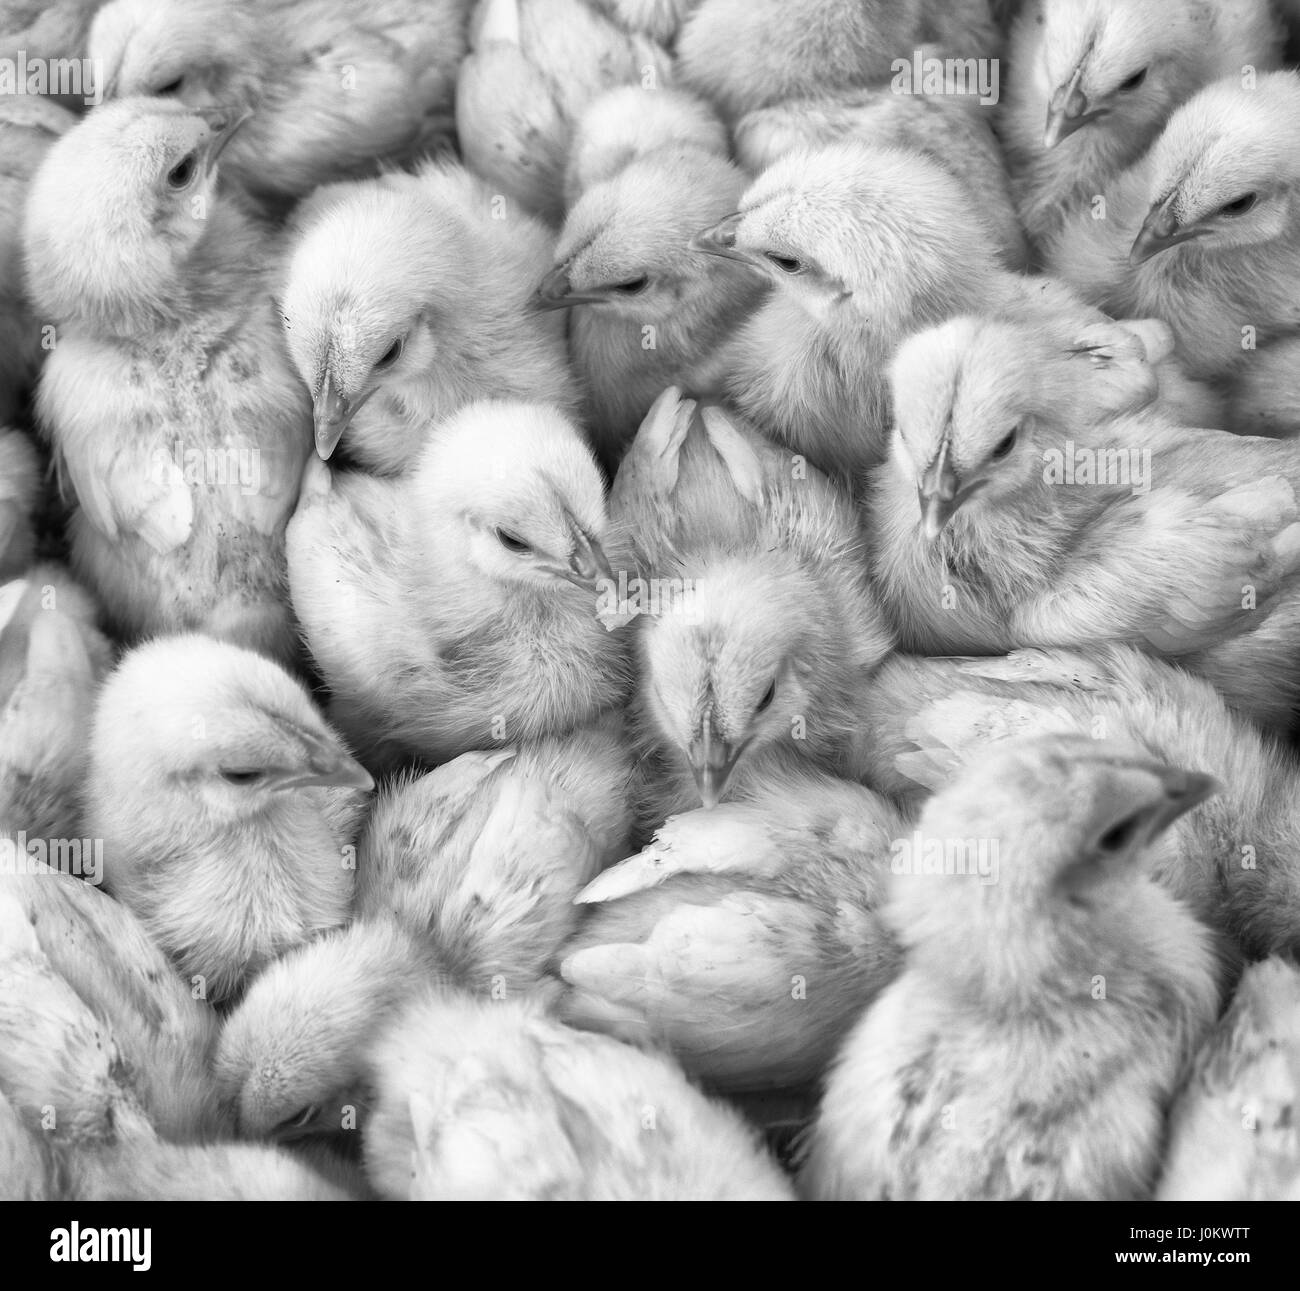 Grand groupe de poussins nouvellement éclos sur une ferme d'élevage de poulets, noir et blanc. Banque D'Images